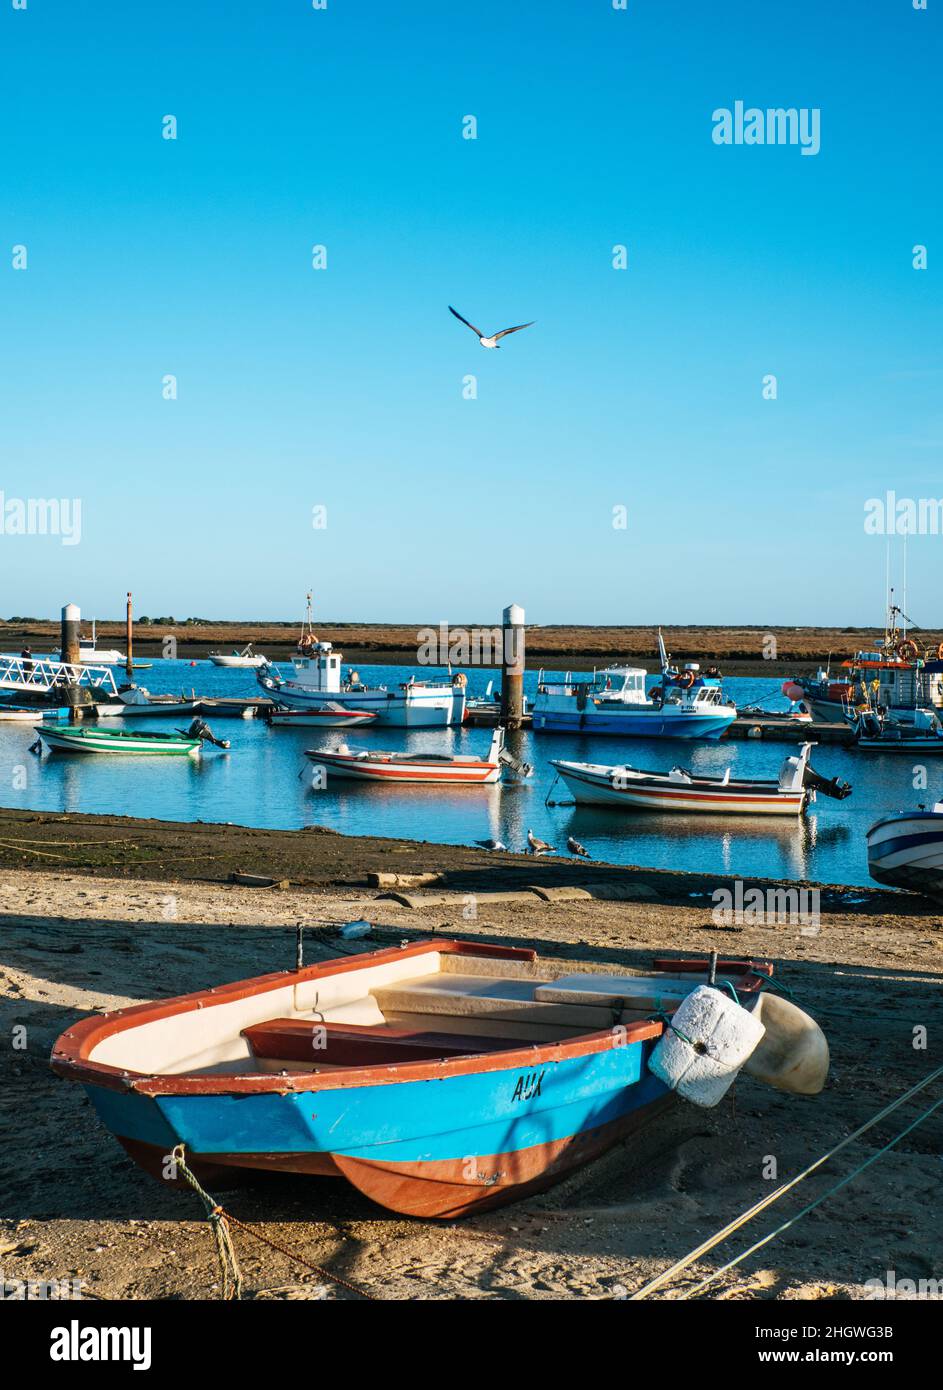 Fishing and Sail boats at Ria Formosa Lagoon in Tavira, Portugal Stock Photo